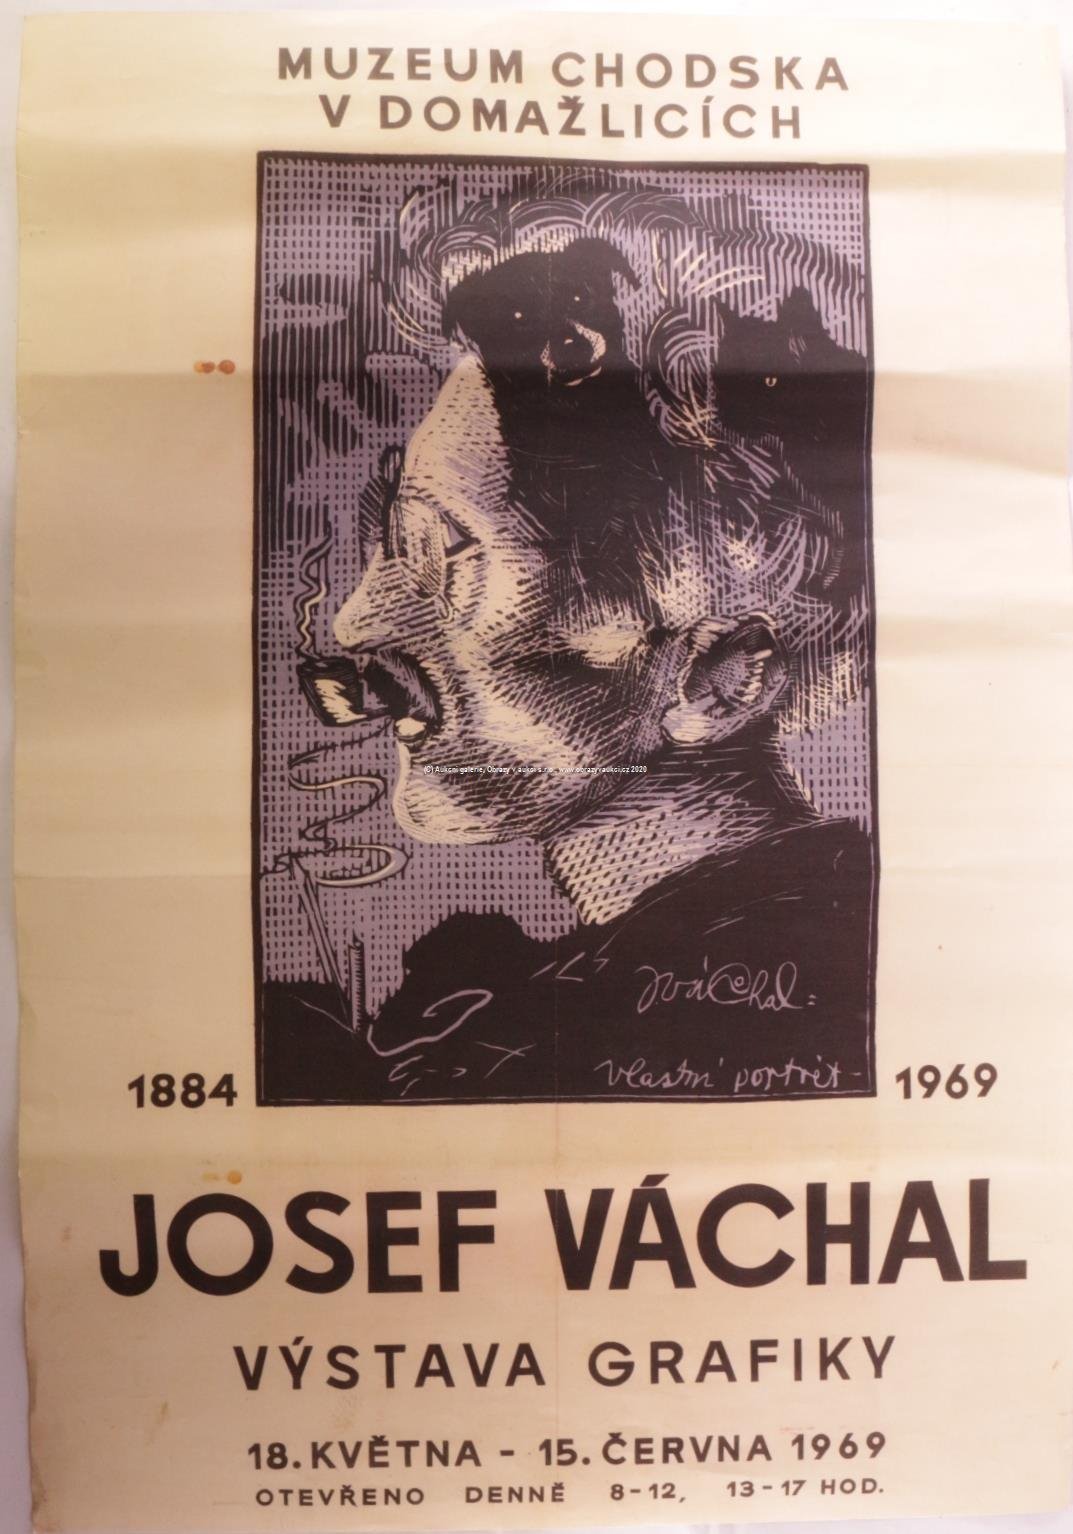 Josef Váchal - Plakát - Vlastní portrét